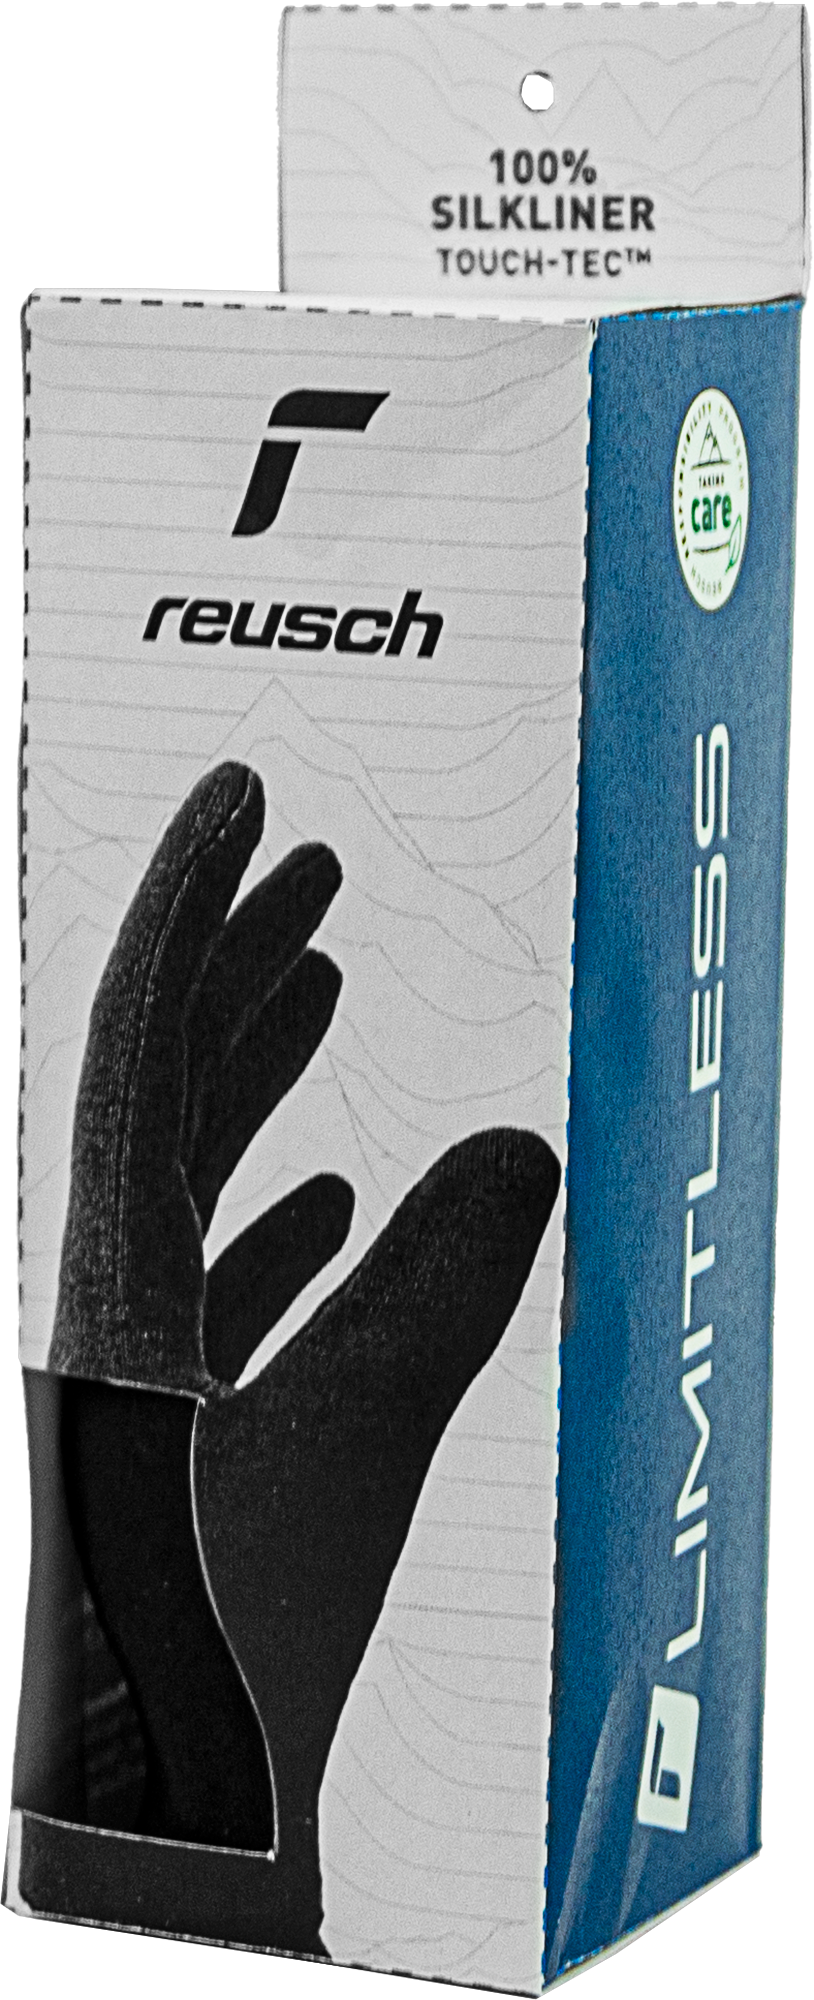 Reusch Silk liner TOUCH-TEC